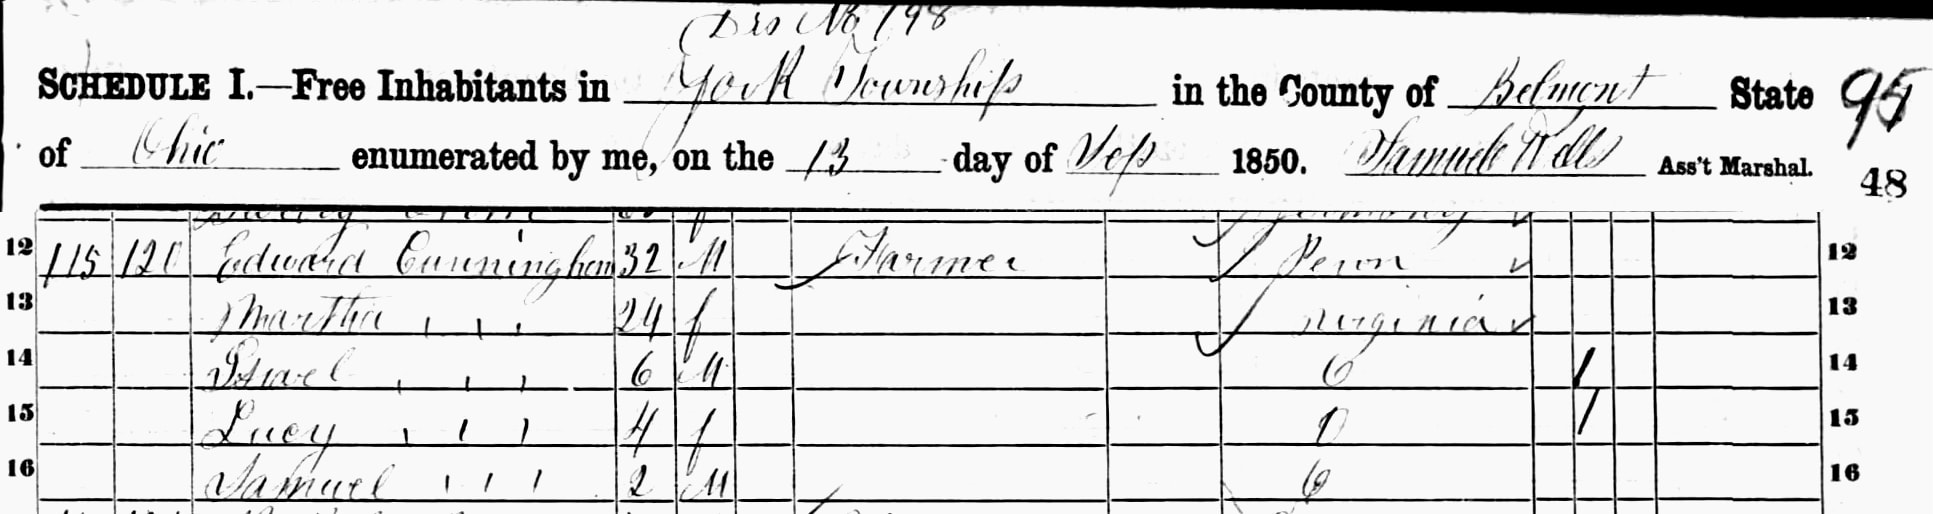 Edward Cunningham 1850 census Ohio